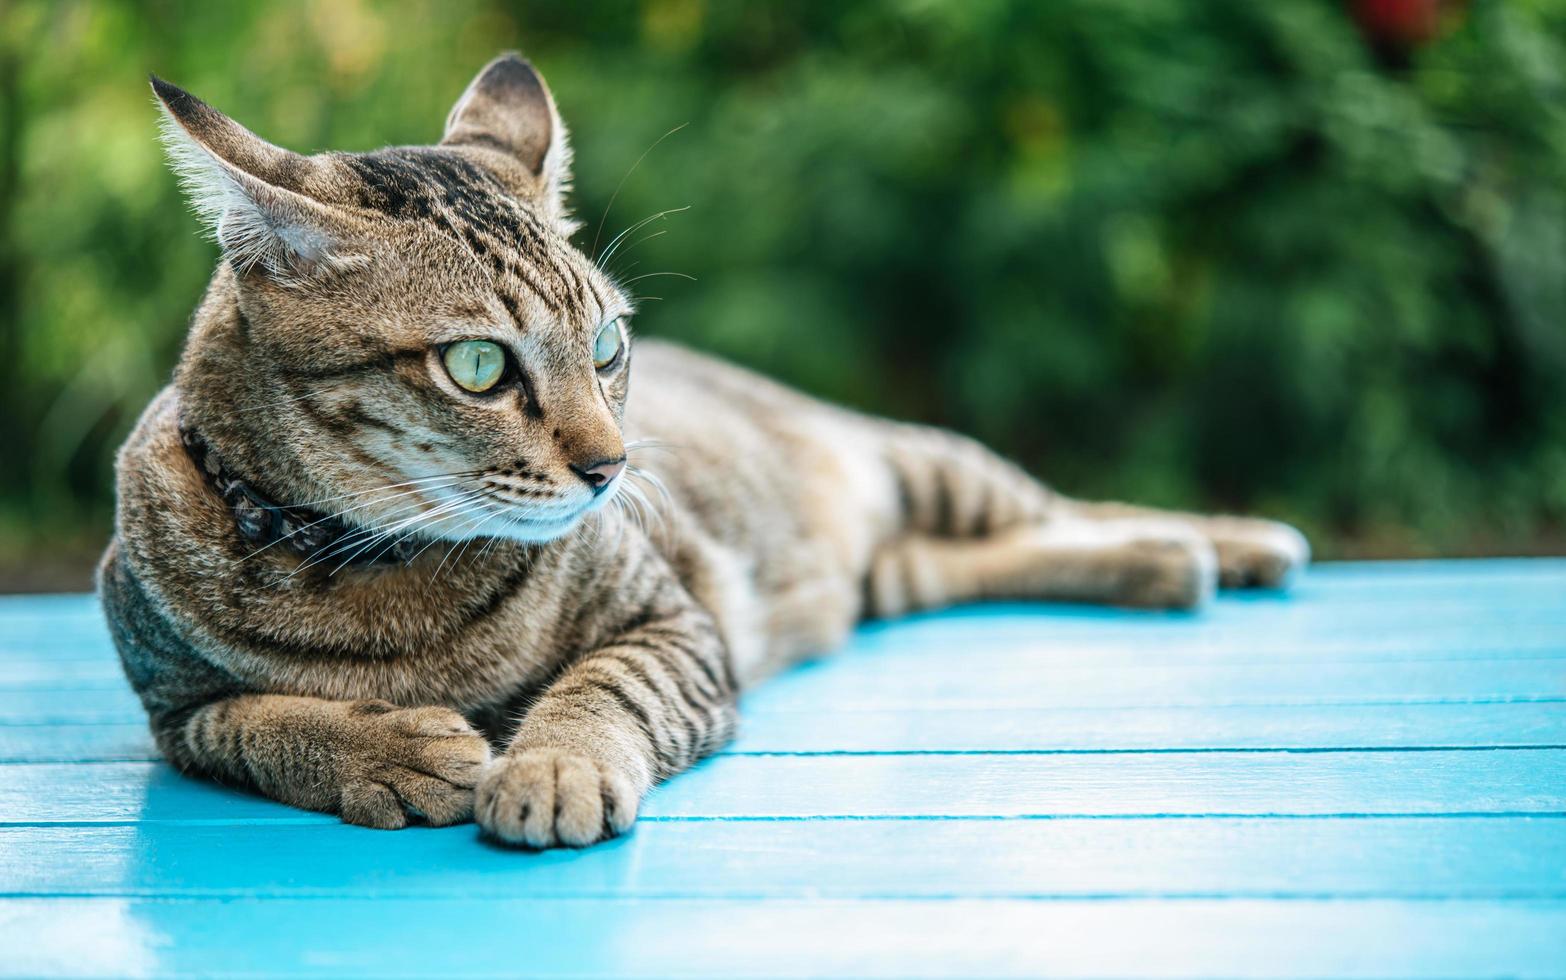 Nahaufnahme einer getigerten Katze auf einer blauen Oberfläche foto